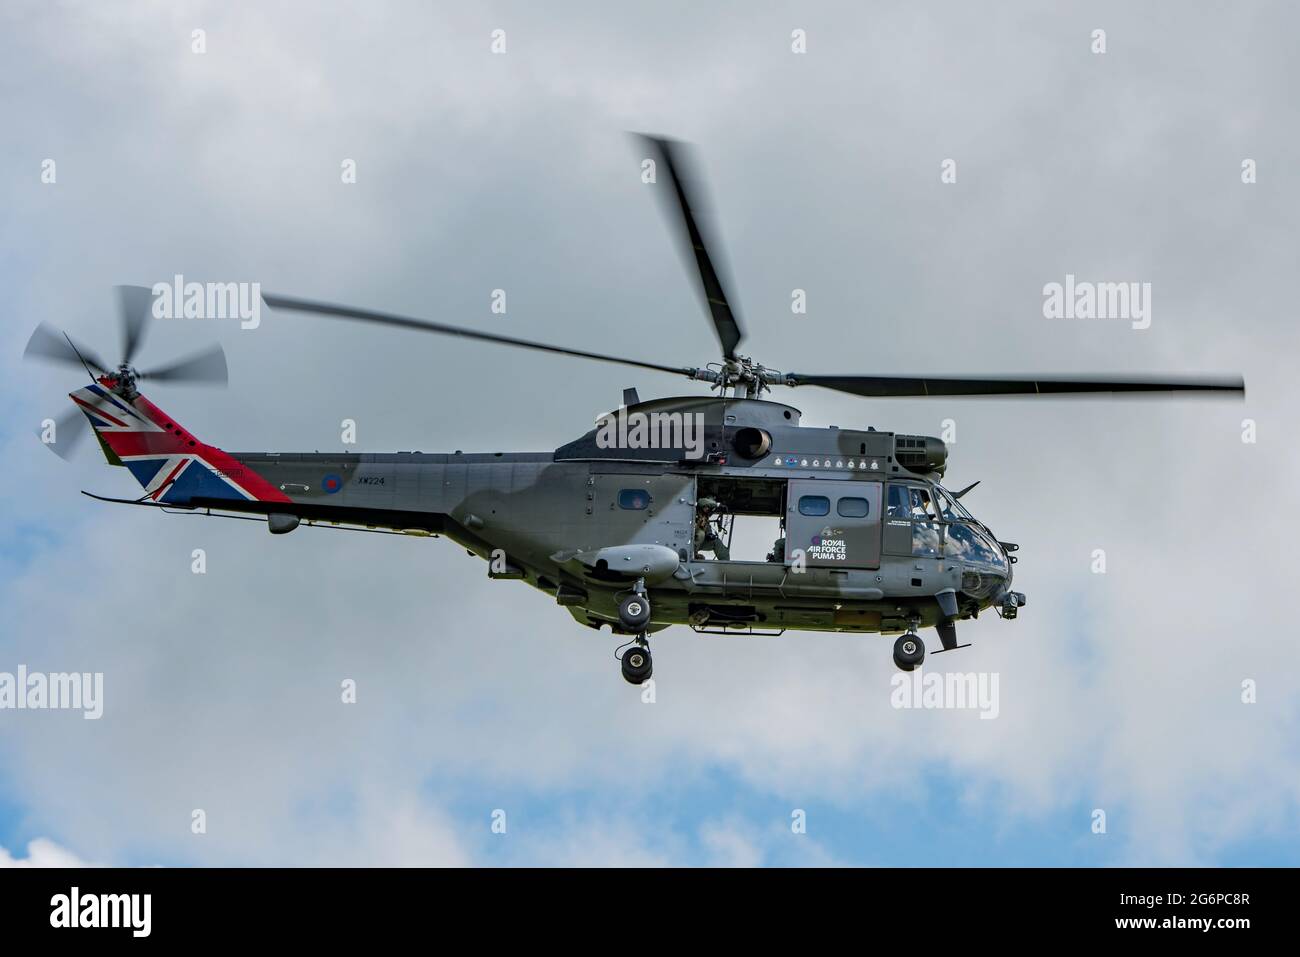 Helicóptero RAF Puma despegando de AAC Middle Wallop como parte de la gira  de vuelo del Reino Unido en 50th Aniversario. La aeronave tiene marcas de  cola de gato de unión Fotografía